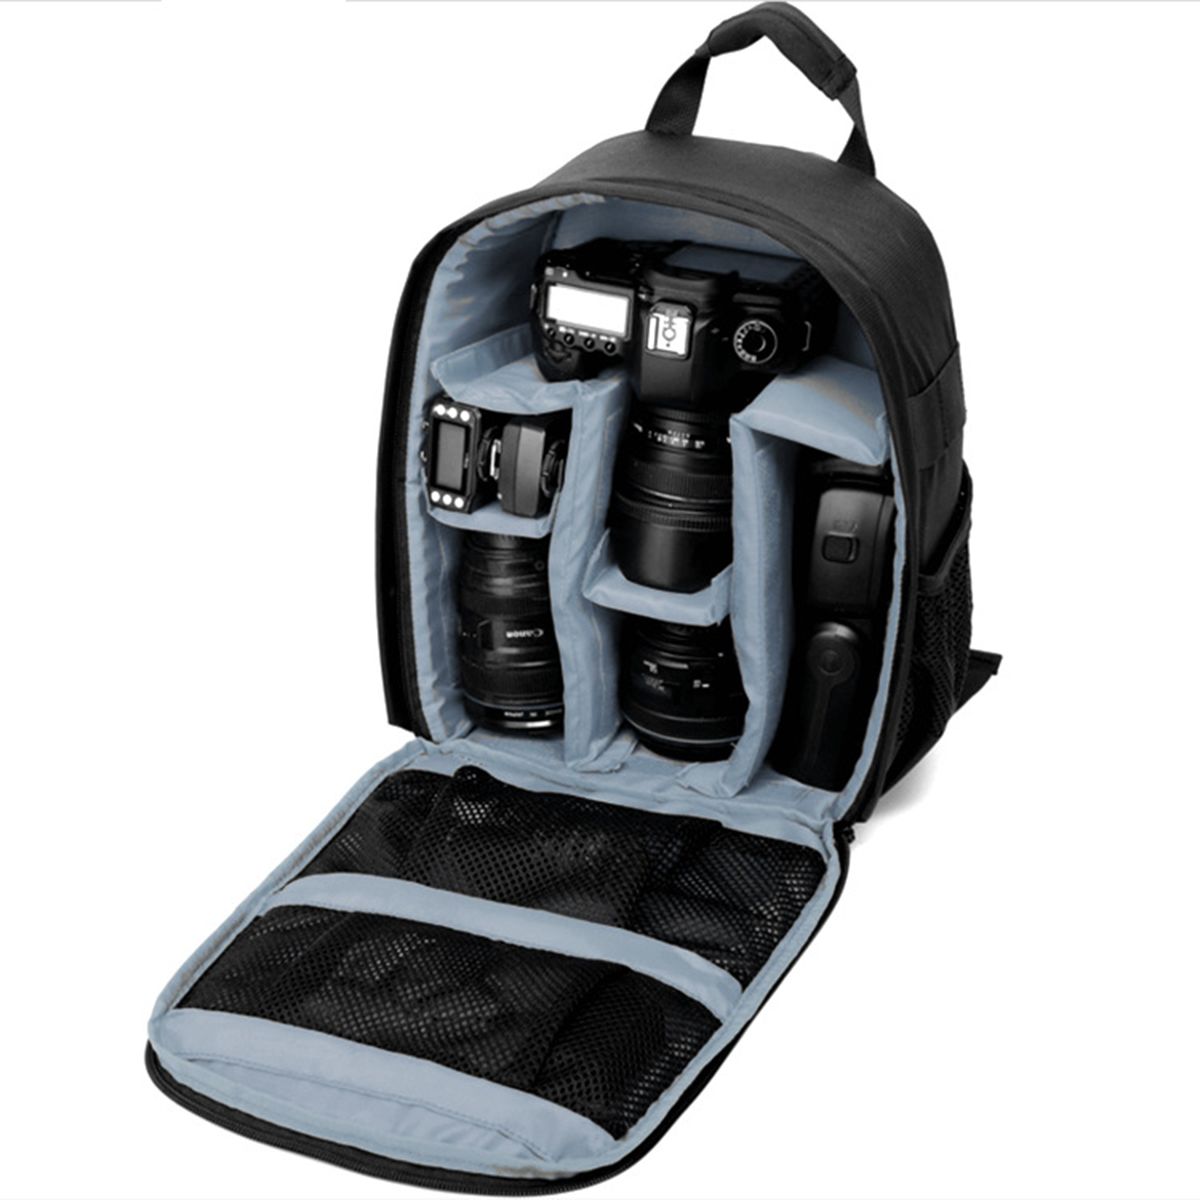 DSLR-Camera-Lens-Storage-Backpack-Water-resistant-Case-Bag-with-Padded-Bag-1419834